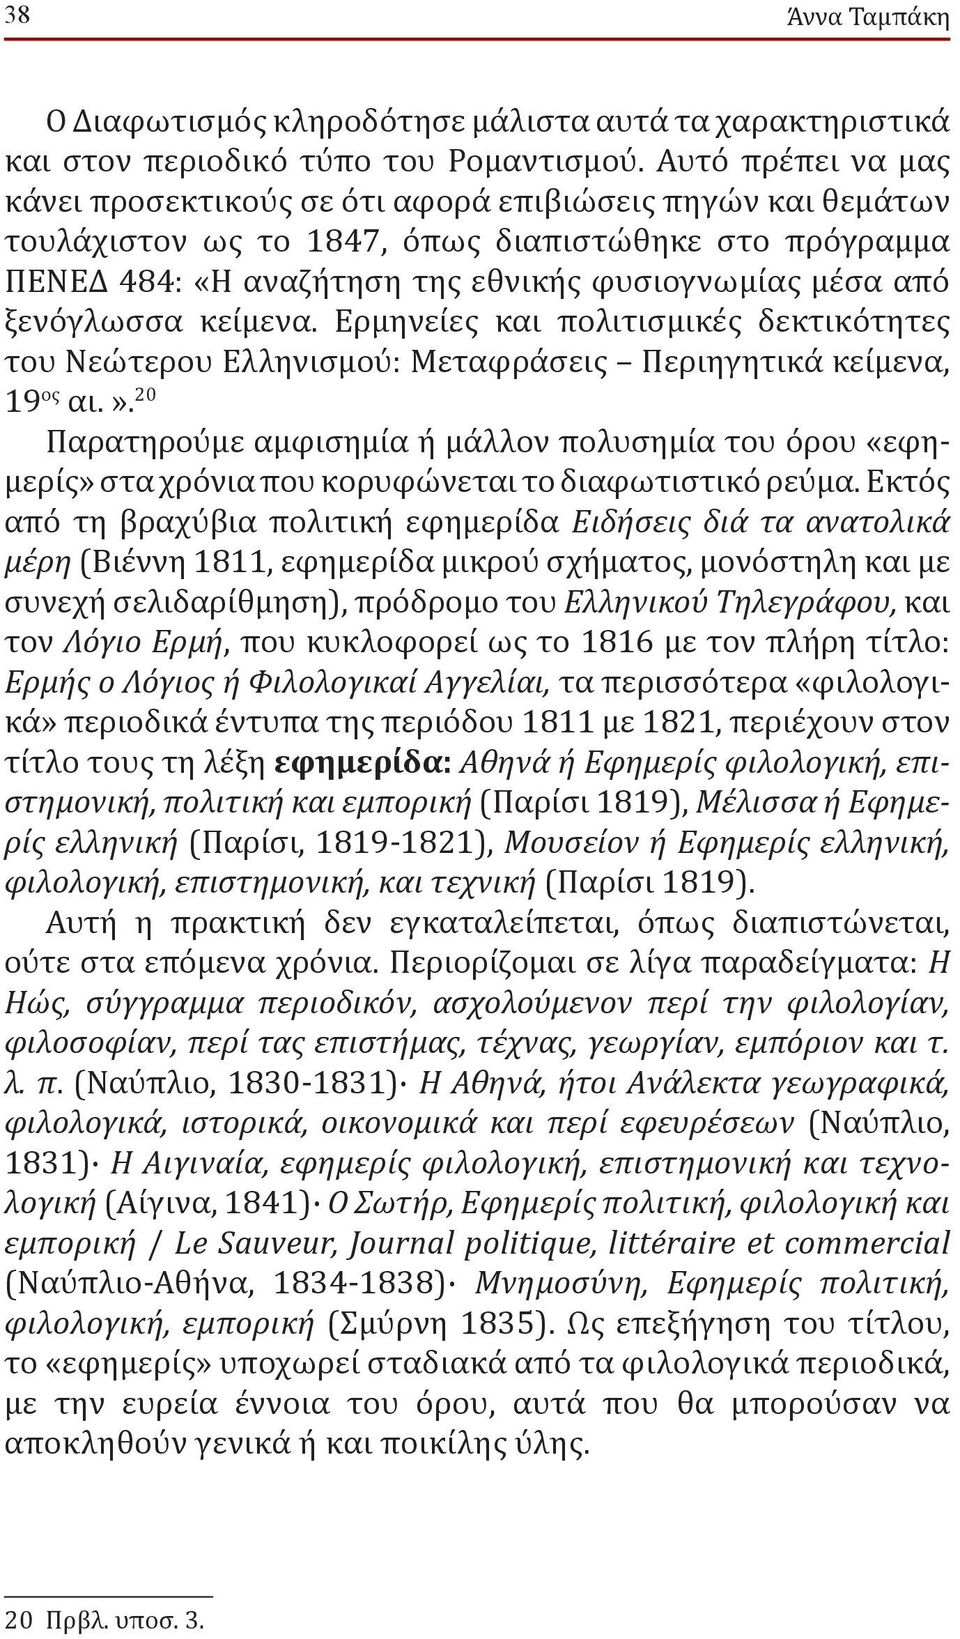 ξενόγλωσσα κείμενα. Ερμηνείες και πολιτισμικές δεκτικότητες του Νεώτερου Ελληνισμου : Μεταφράσεις Περιηγητικά κείμενα, 19 ος αι.».